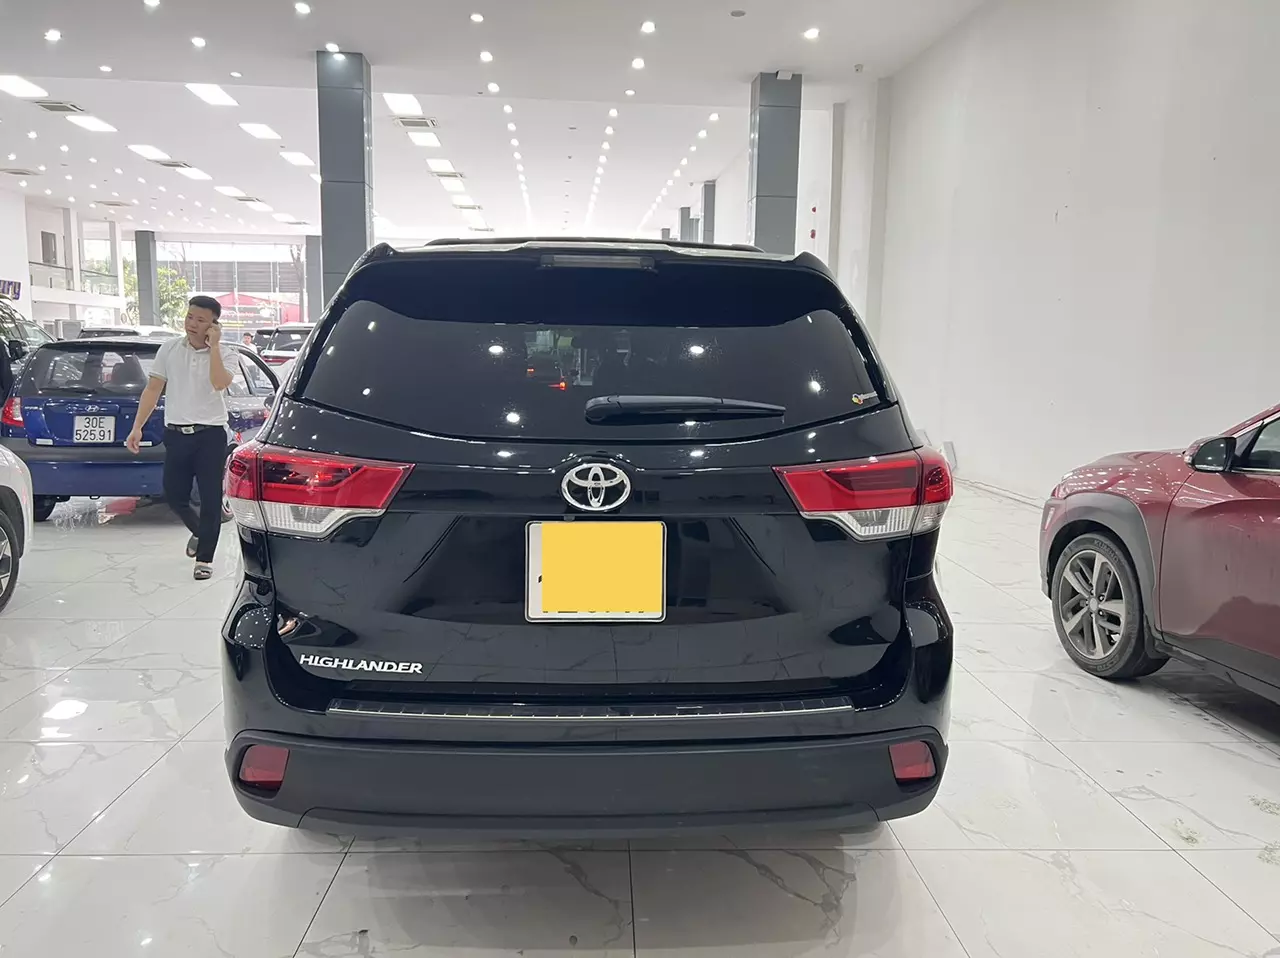 Cần bán xe Toyota Highlander LE sản xuất năm 2017 đăng ký 2019 tên cty có VAT. Xe đi hơn 2 vạn mile rất mới.-2